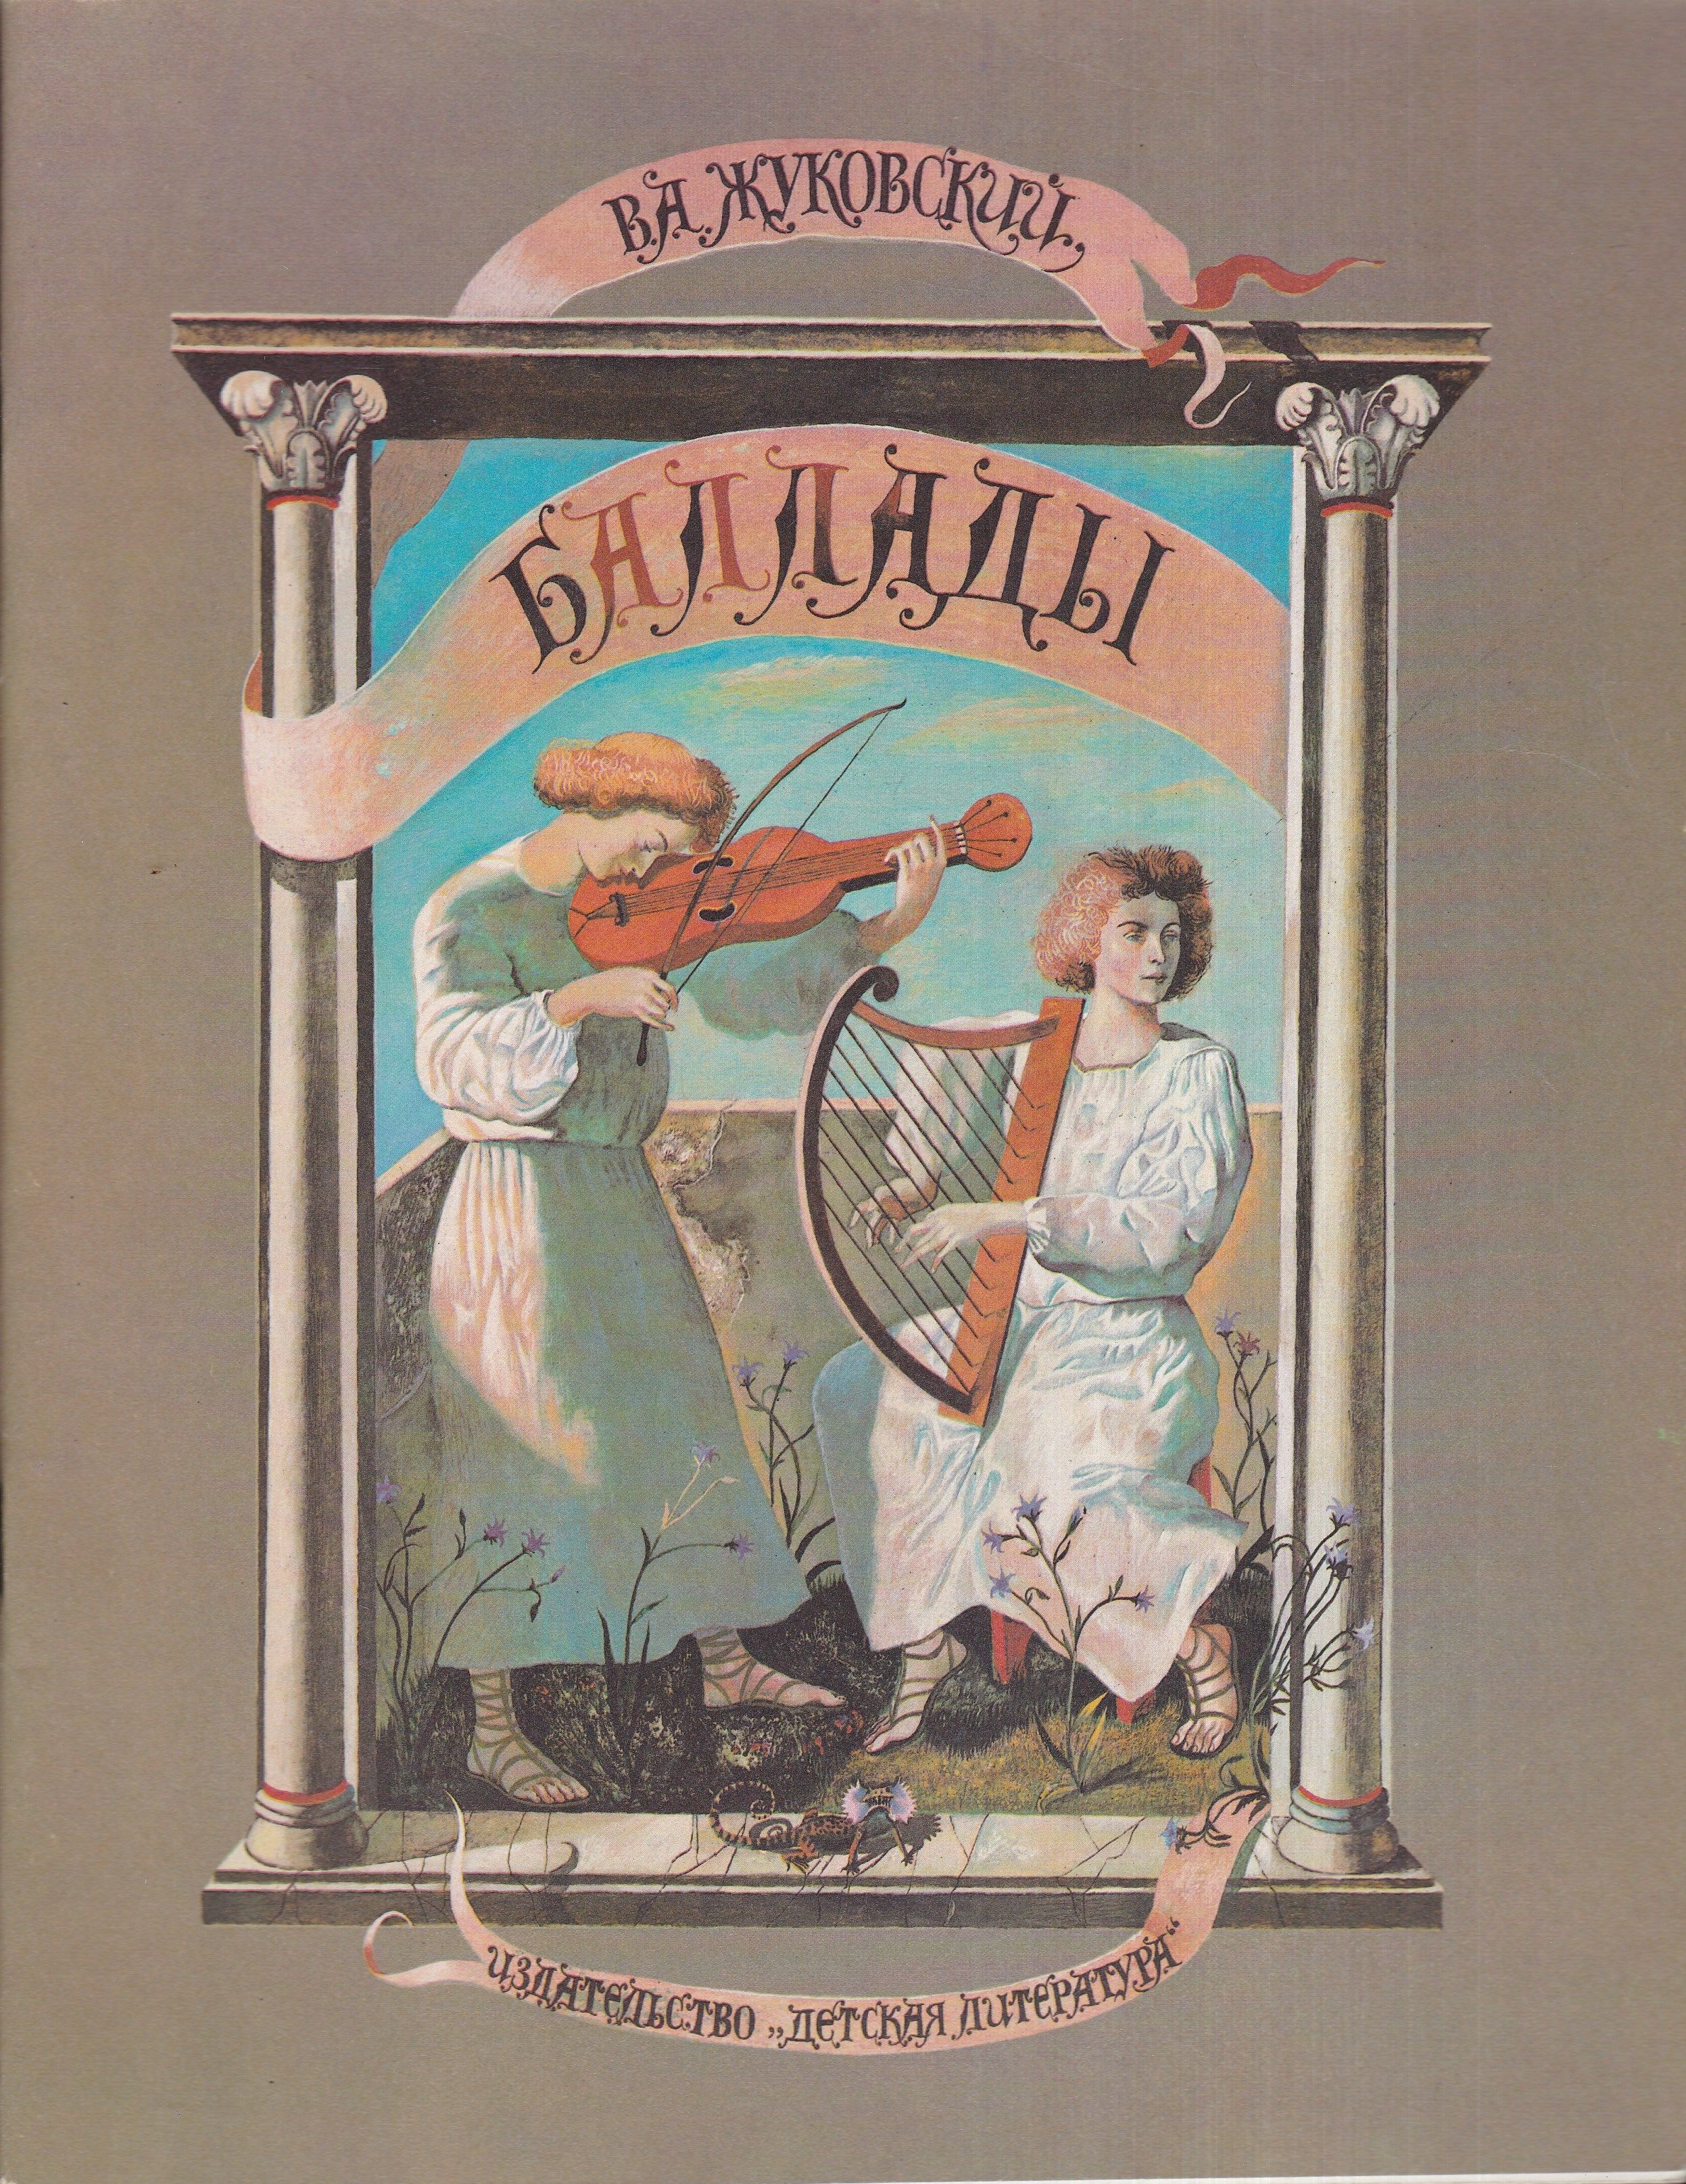 Жуковский баллады 1981 обложка книги